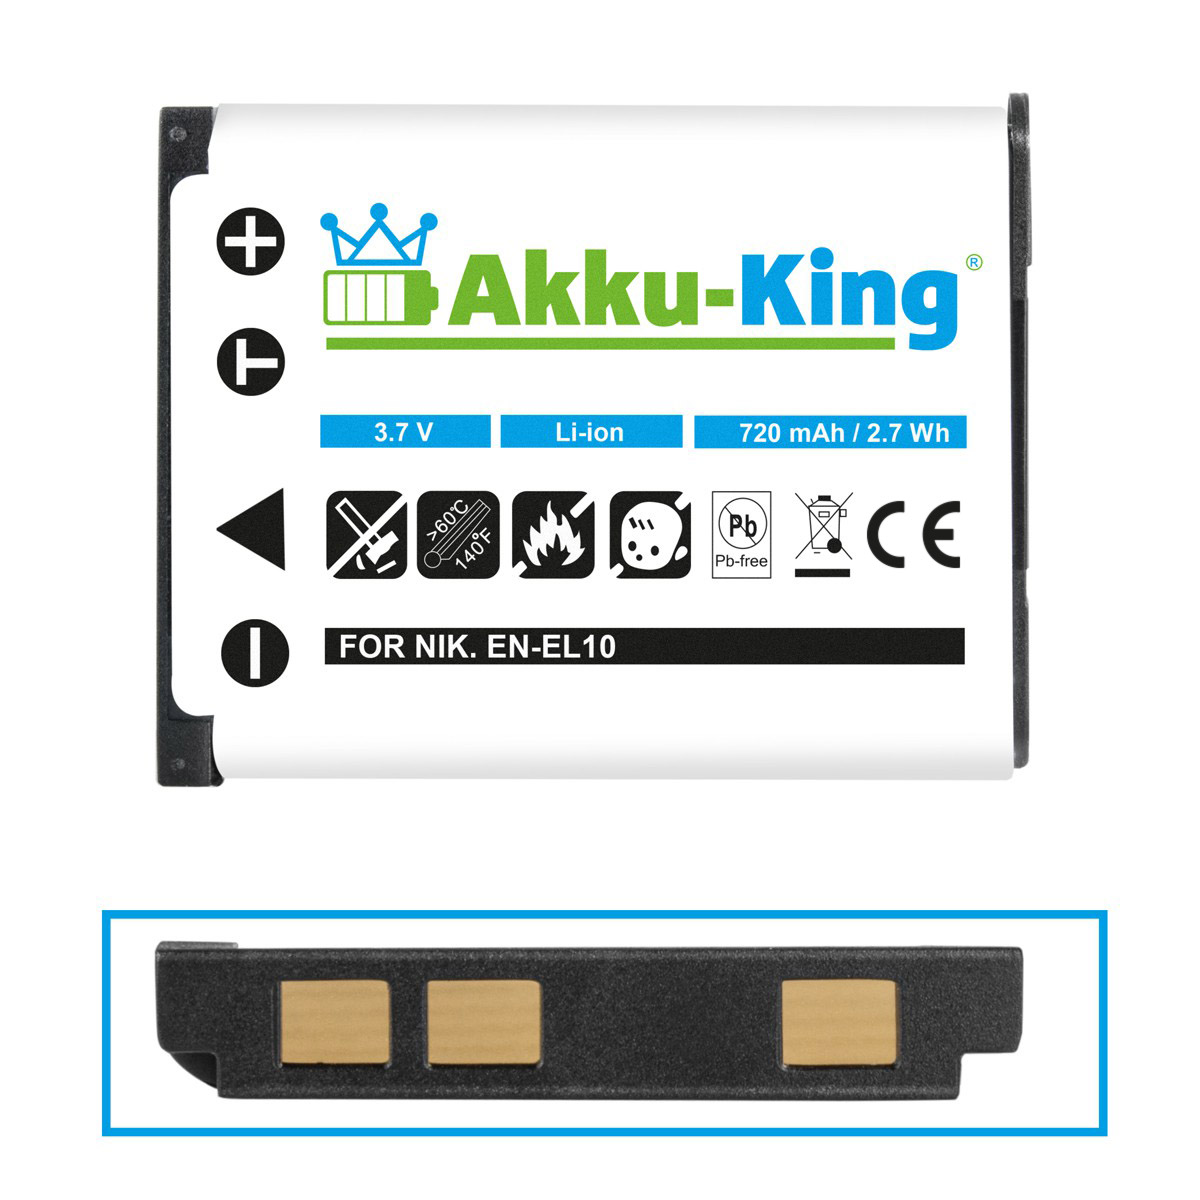 Kamera-Akku, kompatibel Li-Ion Ricoh mit AKKU-KING Akku 720mAh DS-6365 Volt, 3.7